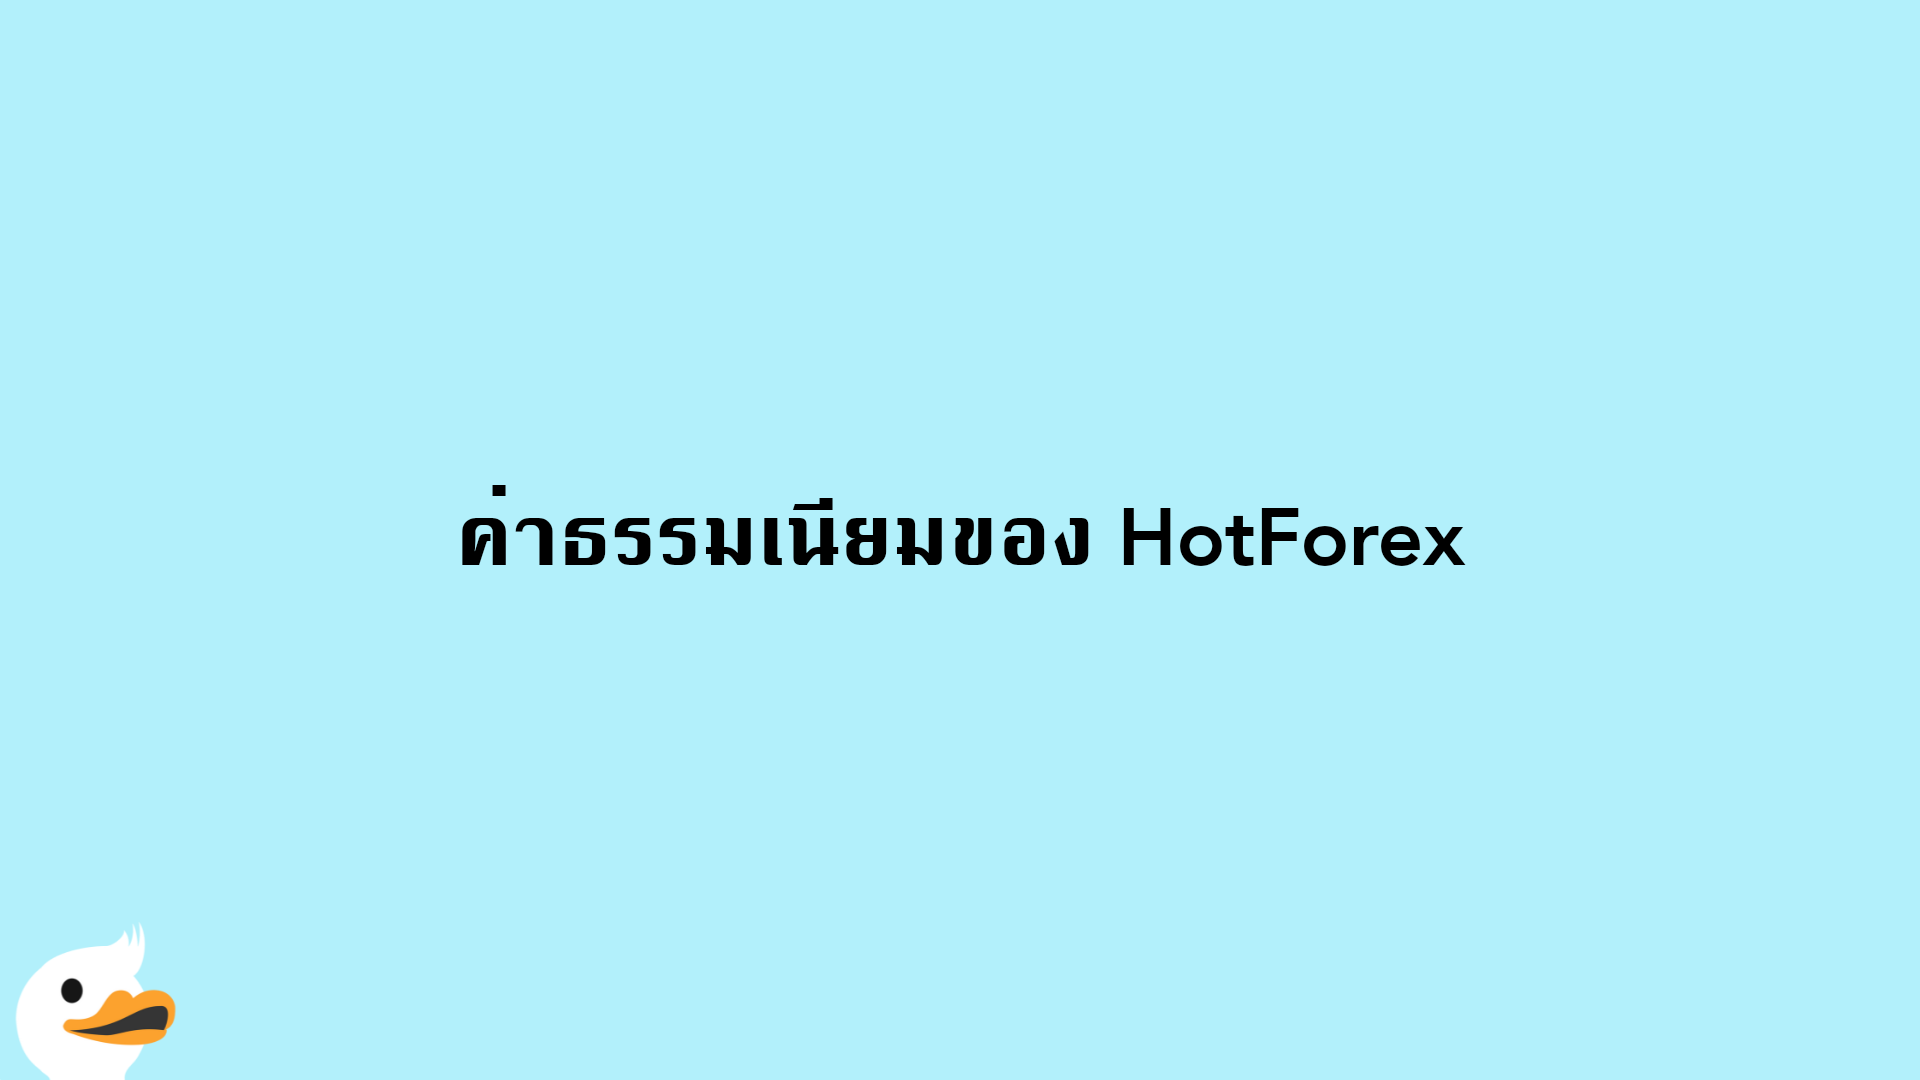 ค่าธรรมเนียมของ HotForex